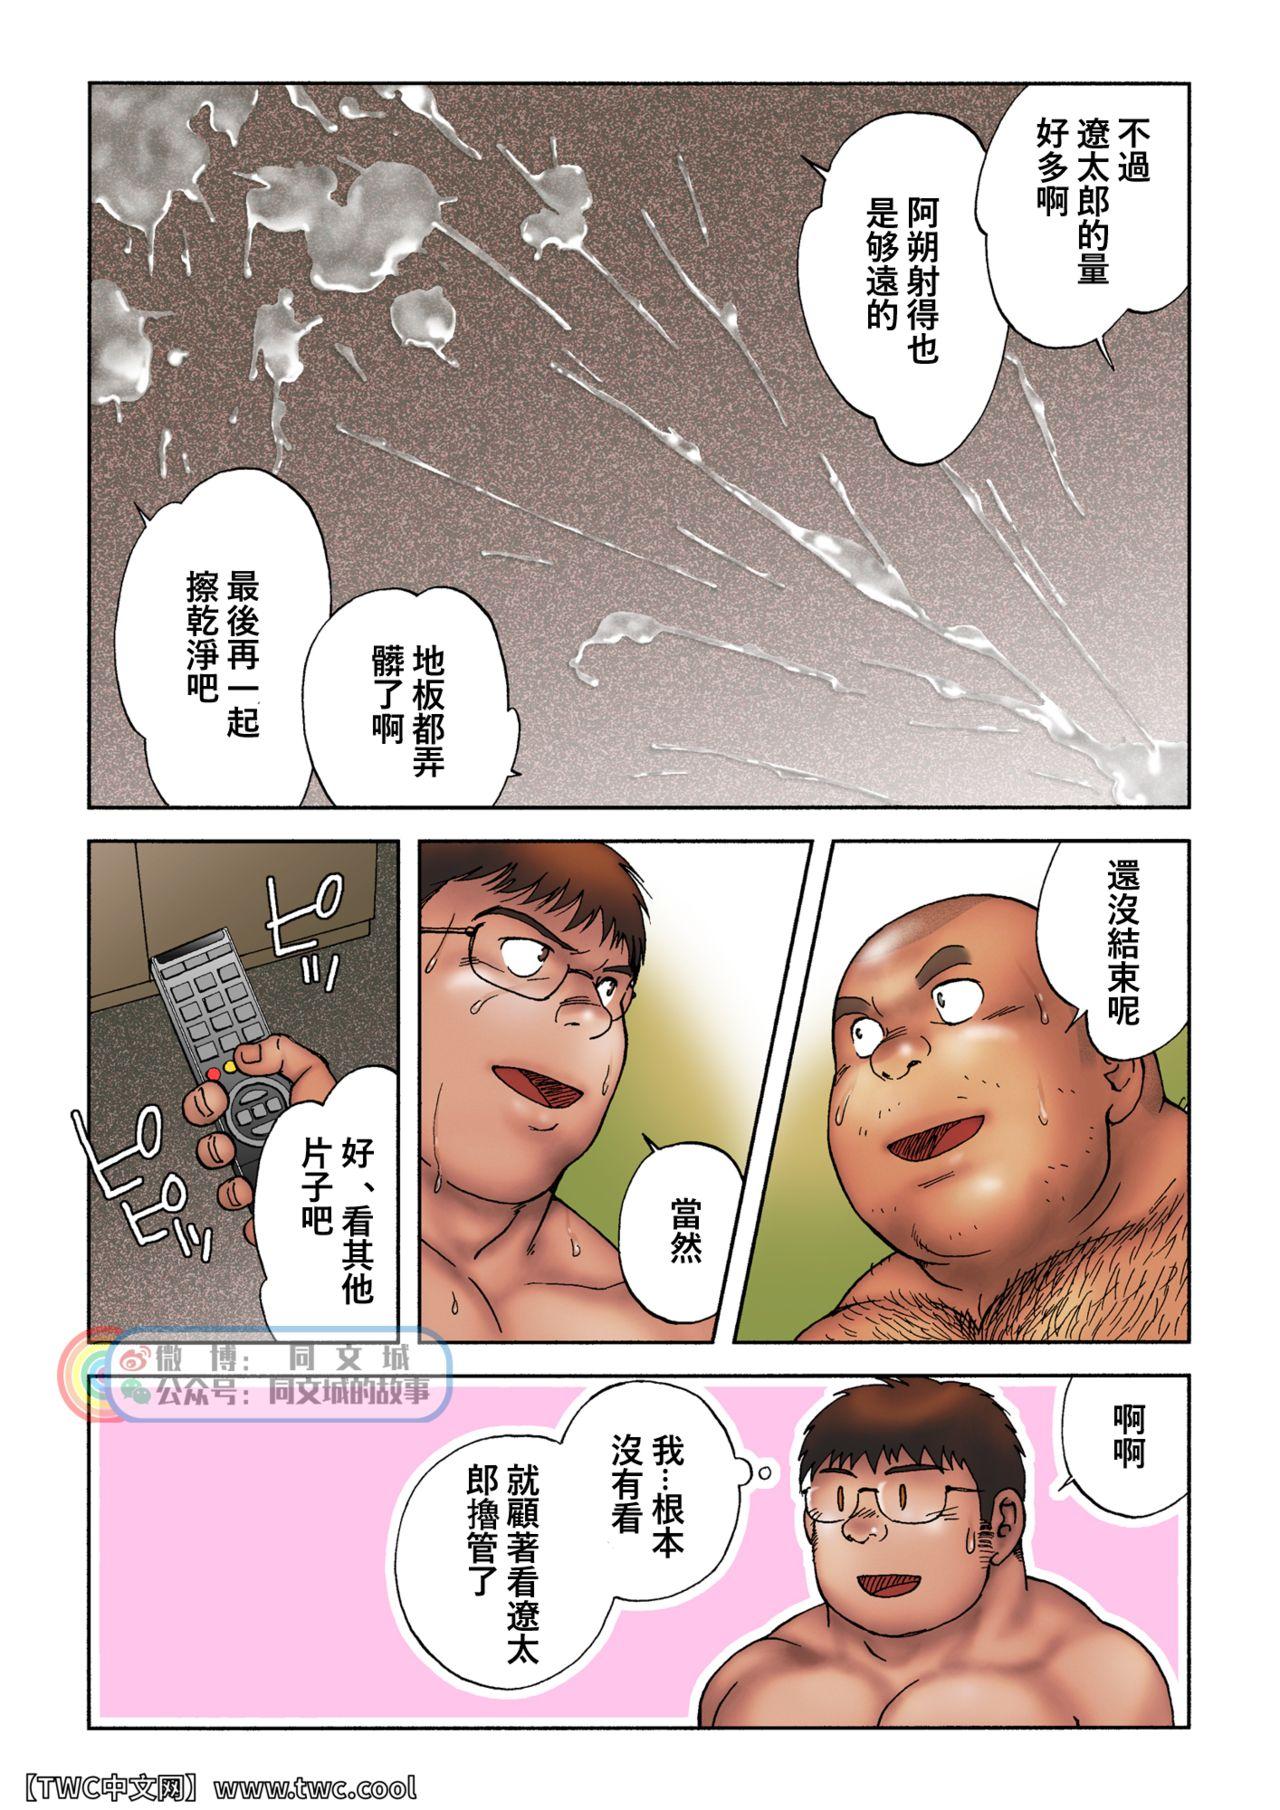 Imvu Danshi Koukousei Weightlifter Taikai-go no Hotel de no Aoi Yoru Asses - Page 10